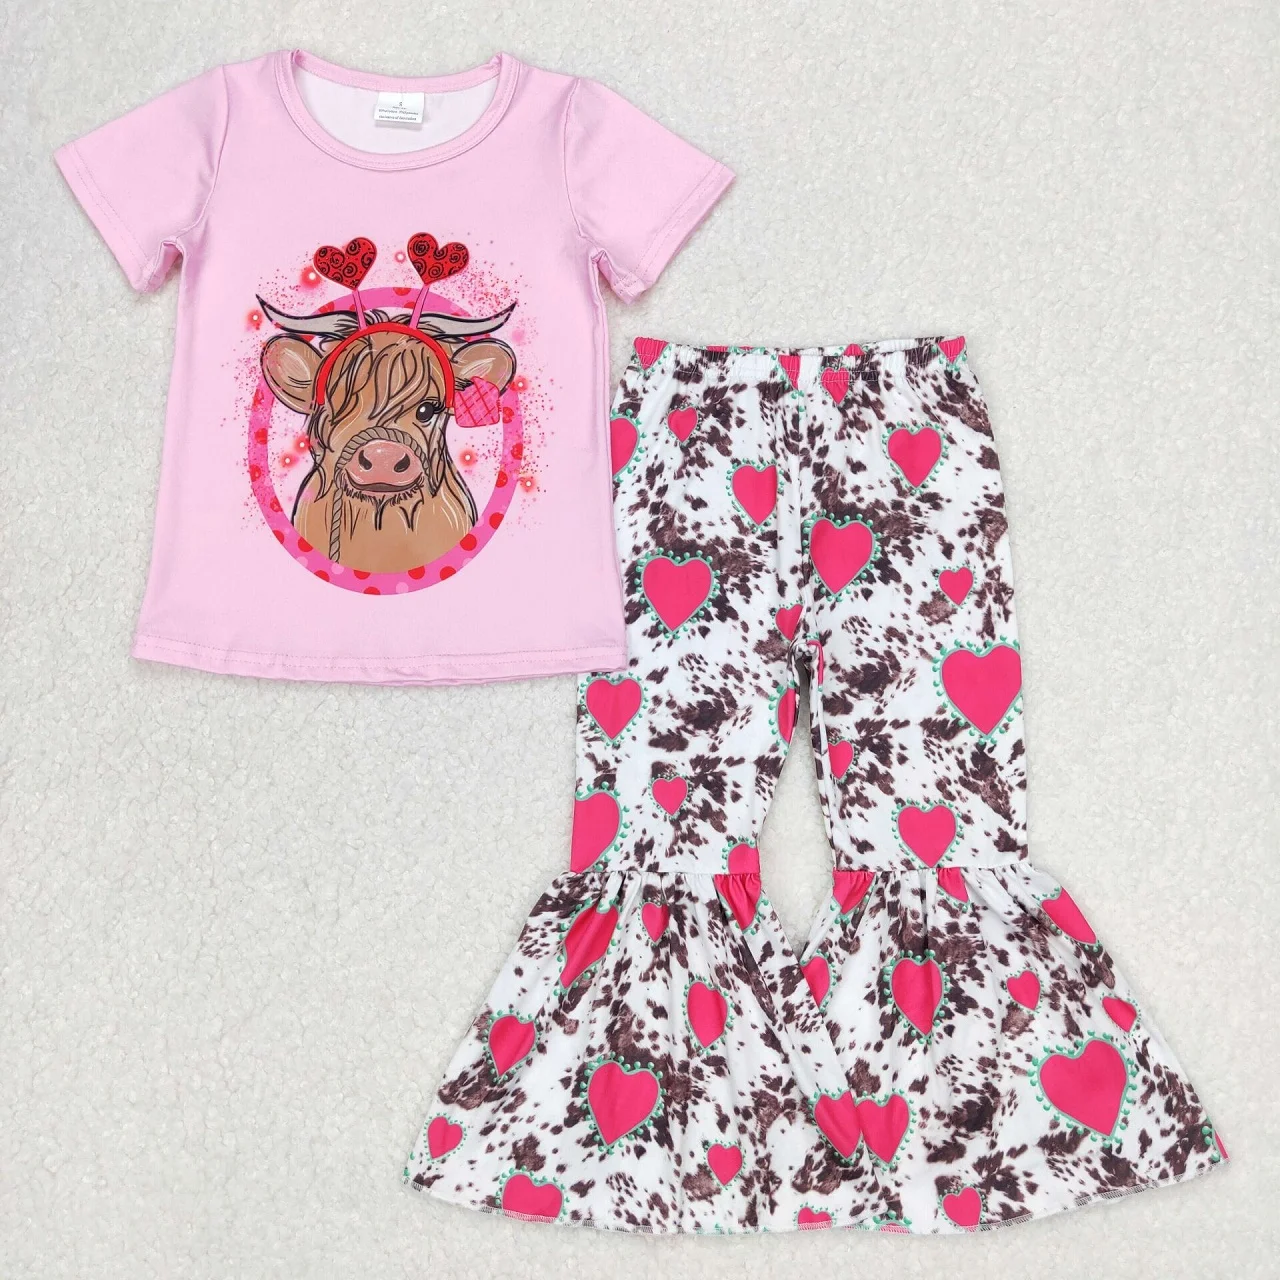 

Оптовая продажа, Детский комплект на День святого Валентина, розовая рубашка с короткими рукавами для малышей, наряд для маленьких девочек с сердечками, штаны с коровьим принтом и колокольчиками, одежда